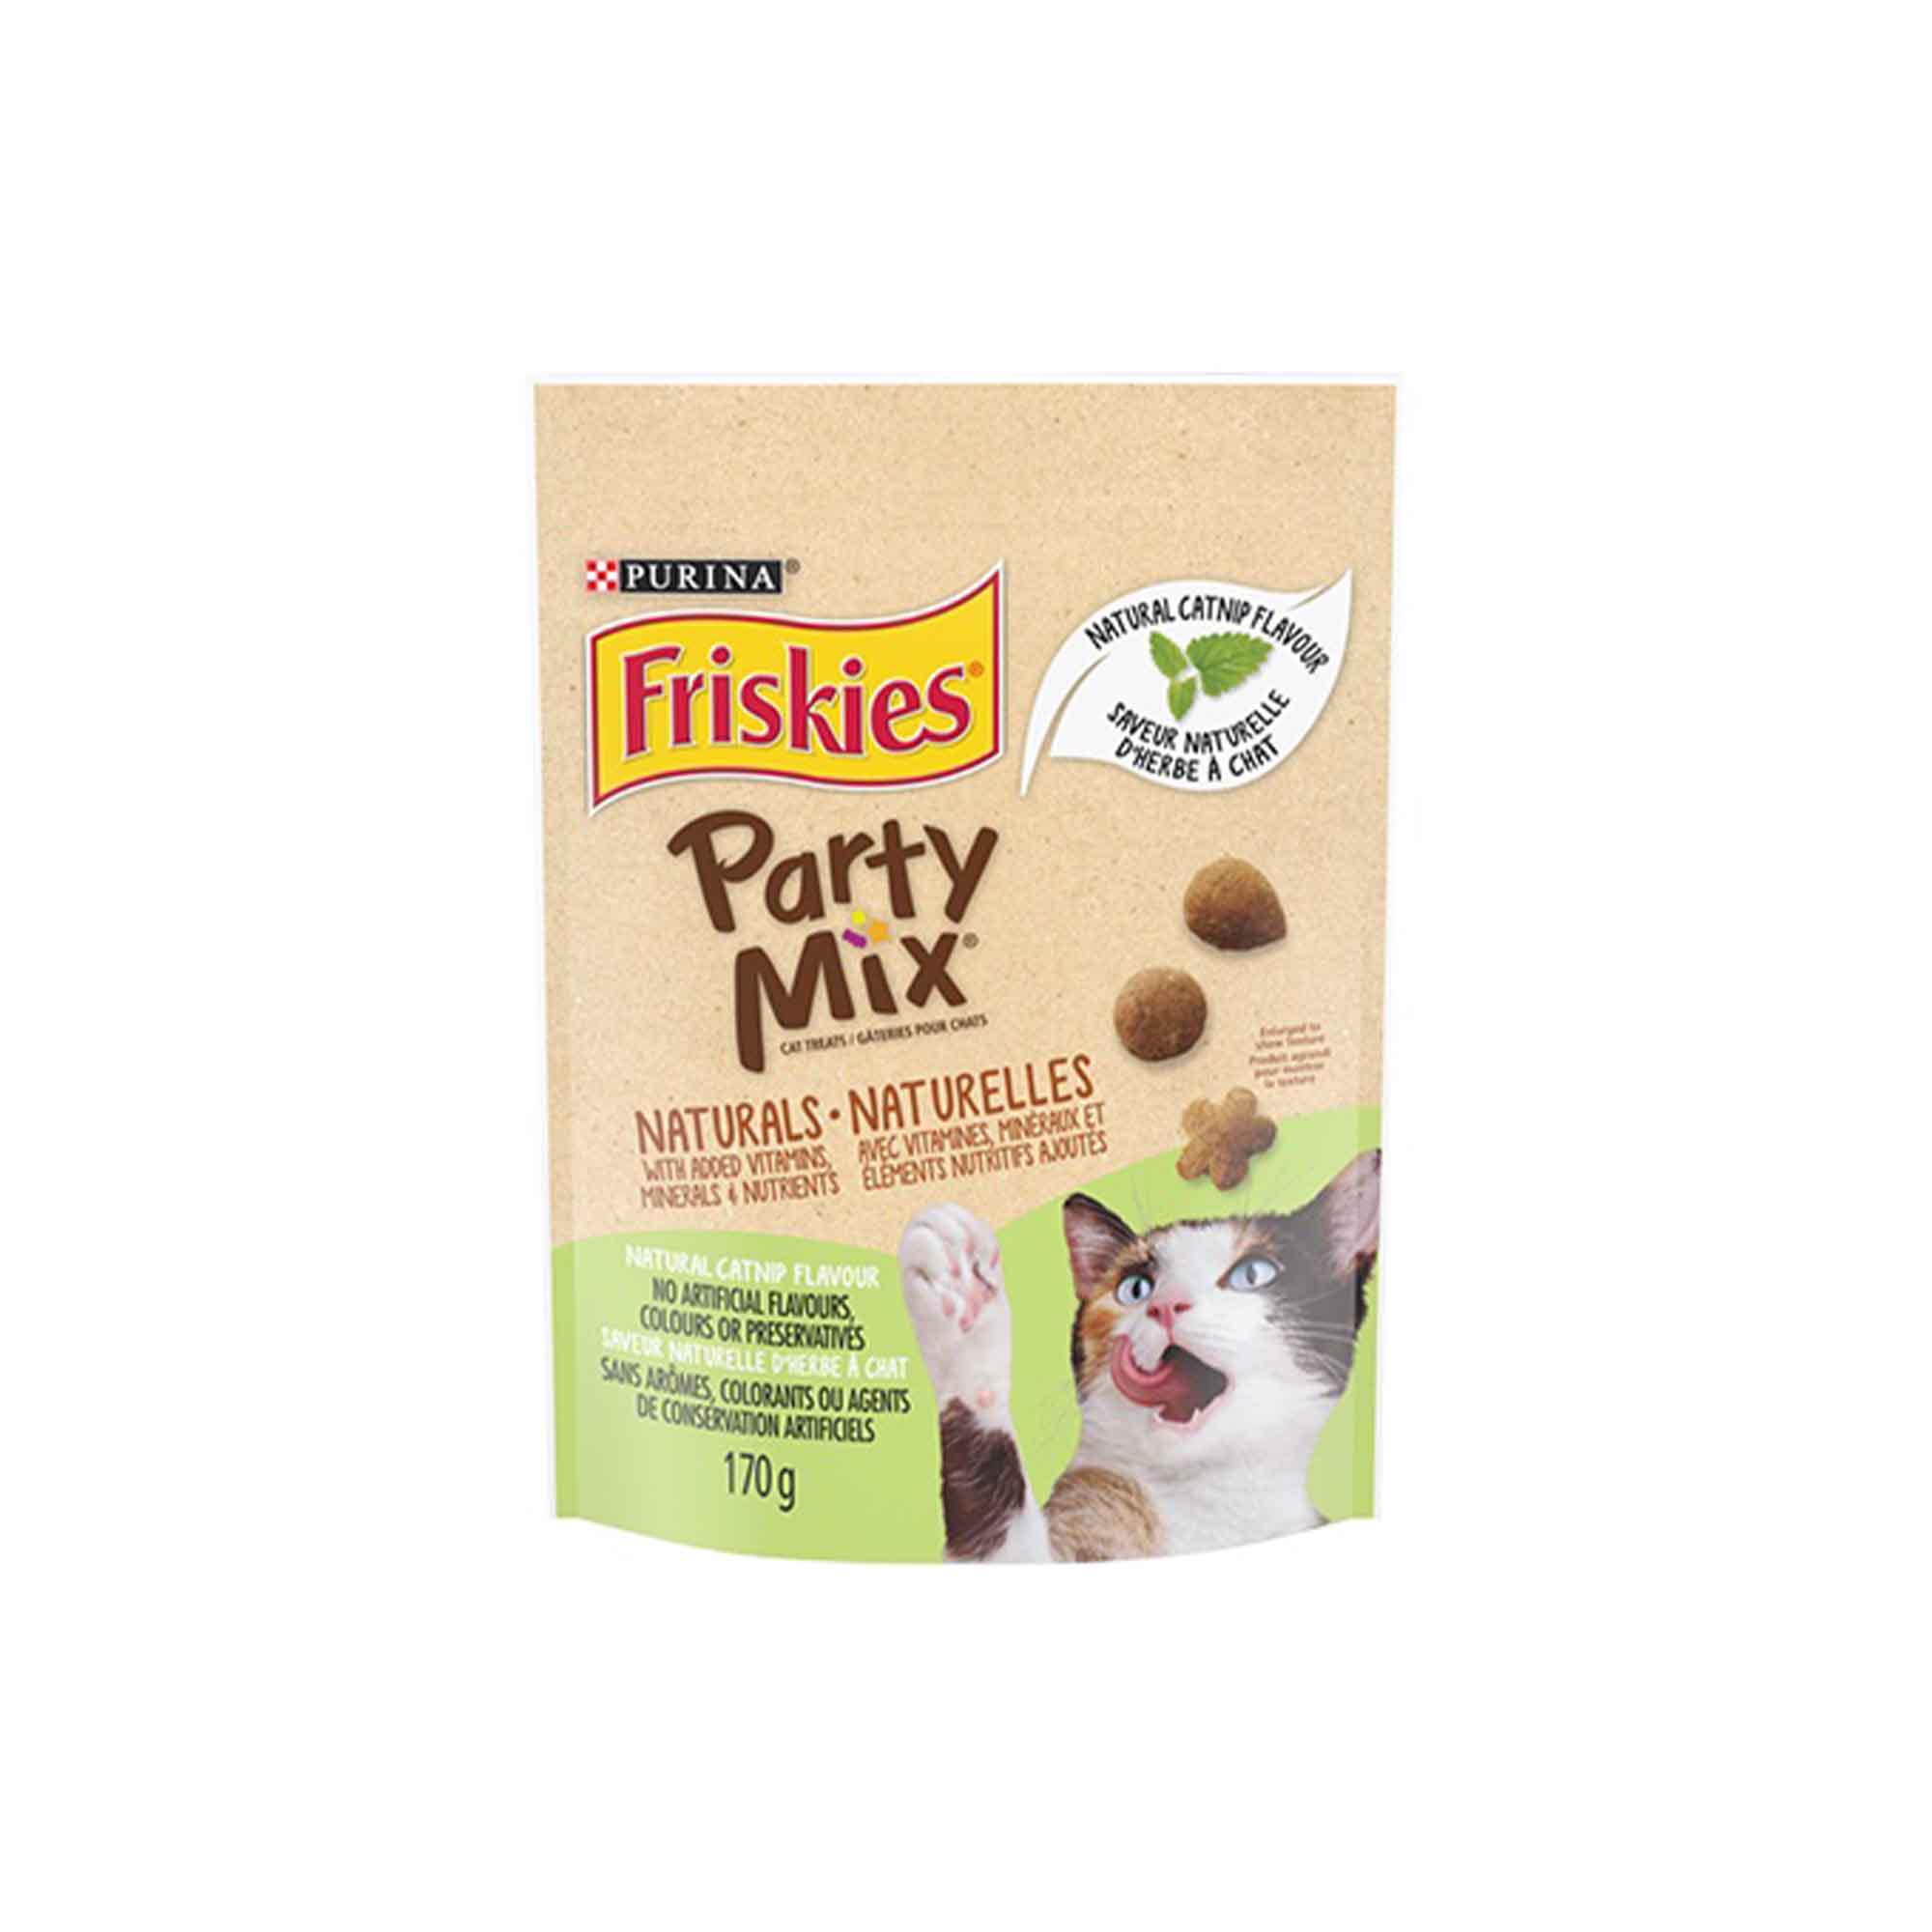 Friskies® Party Mix®Naturals, catnip flavored cat treats - 170g